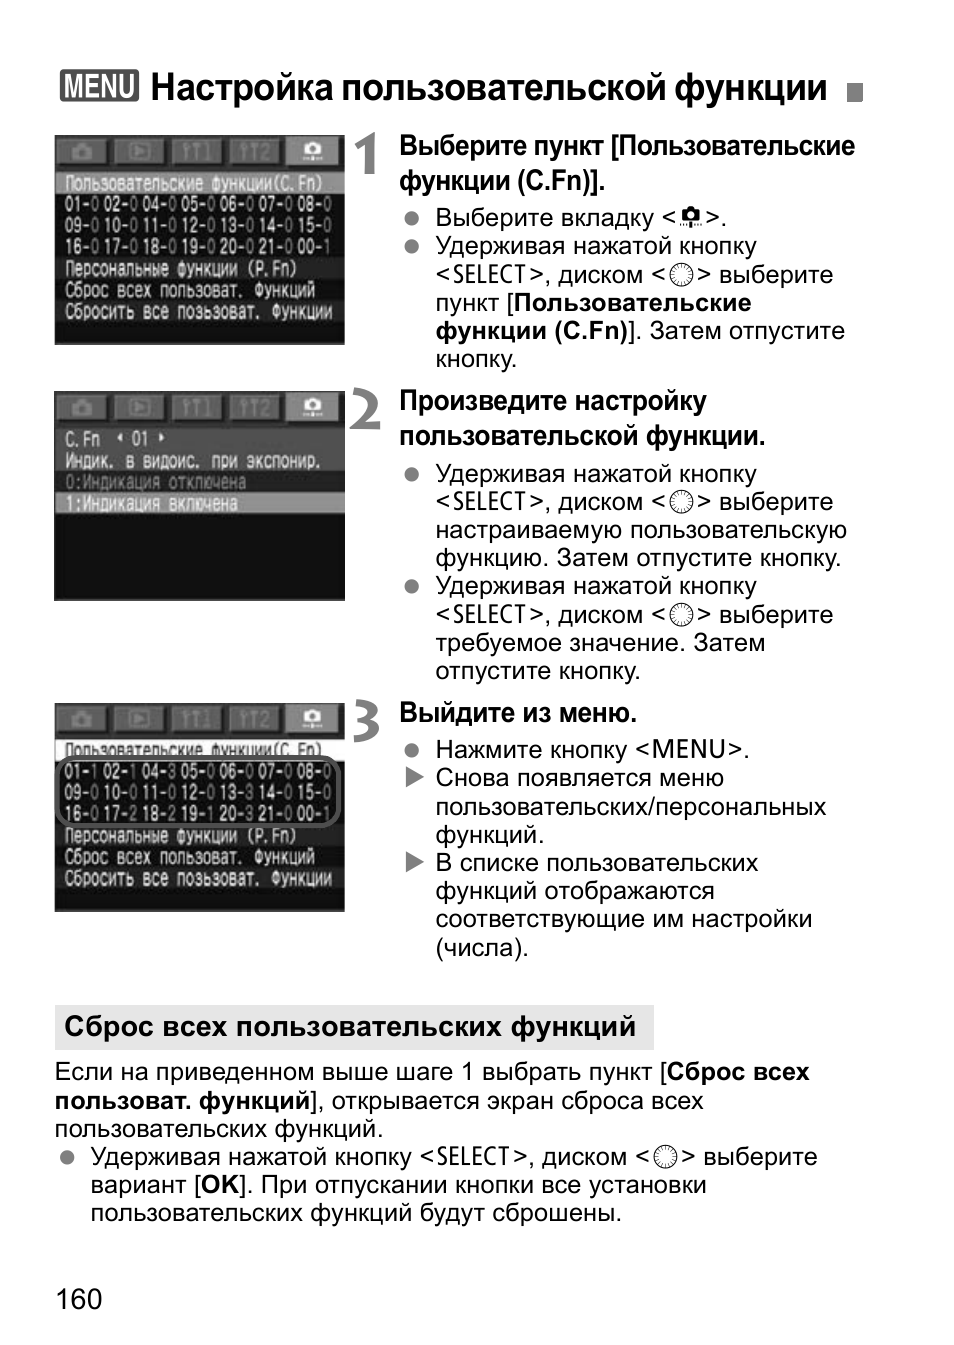 3настройка пользовательской функции | Инструкция по эксплуатации Canon EOS 1D Mark II N | Страница 160 / 196